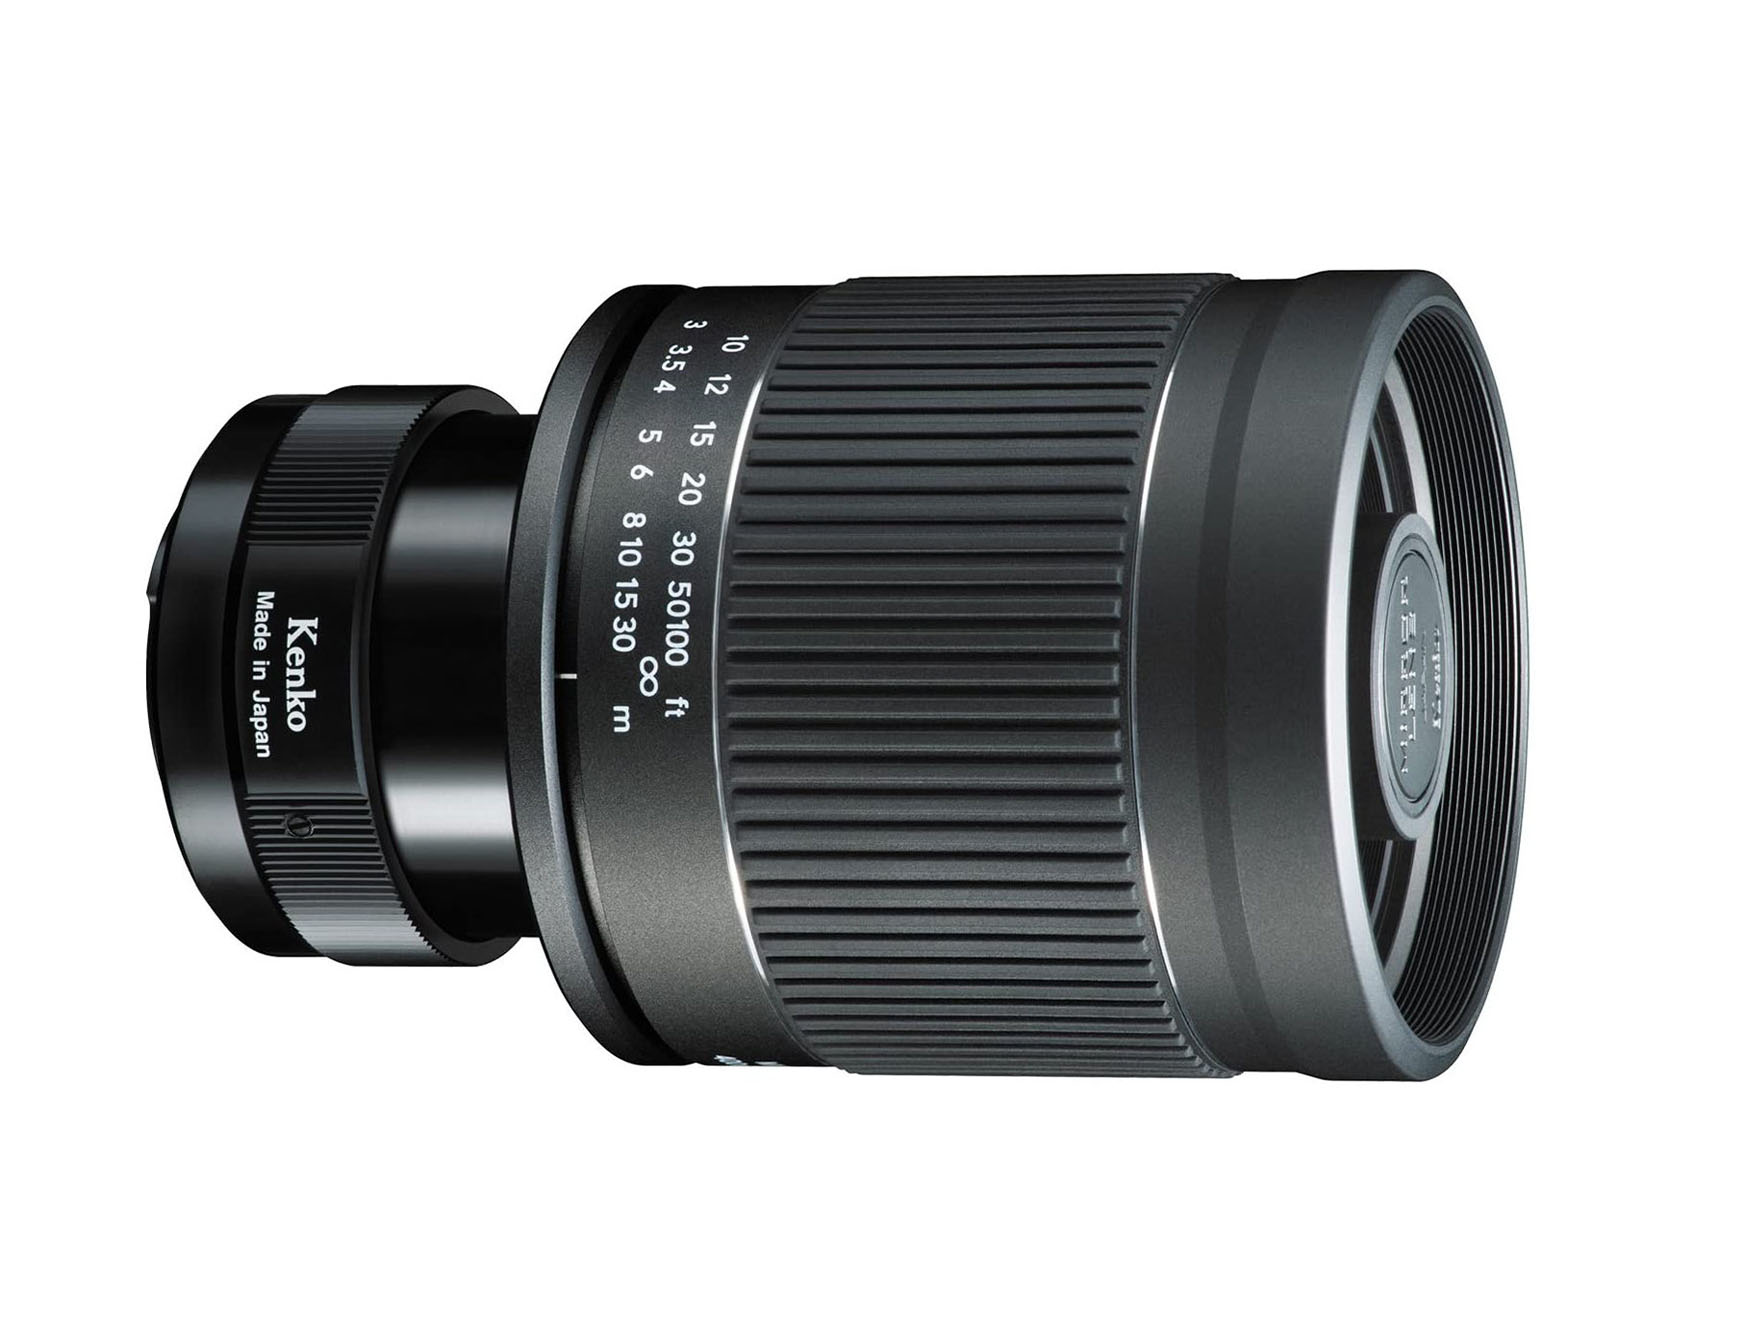 Thế hệ thứ hai của ống kính gương Tokina 400mm F8 sẽ hỗ trợ 8 ngàm và có giá 260 USD